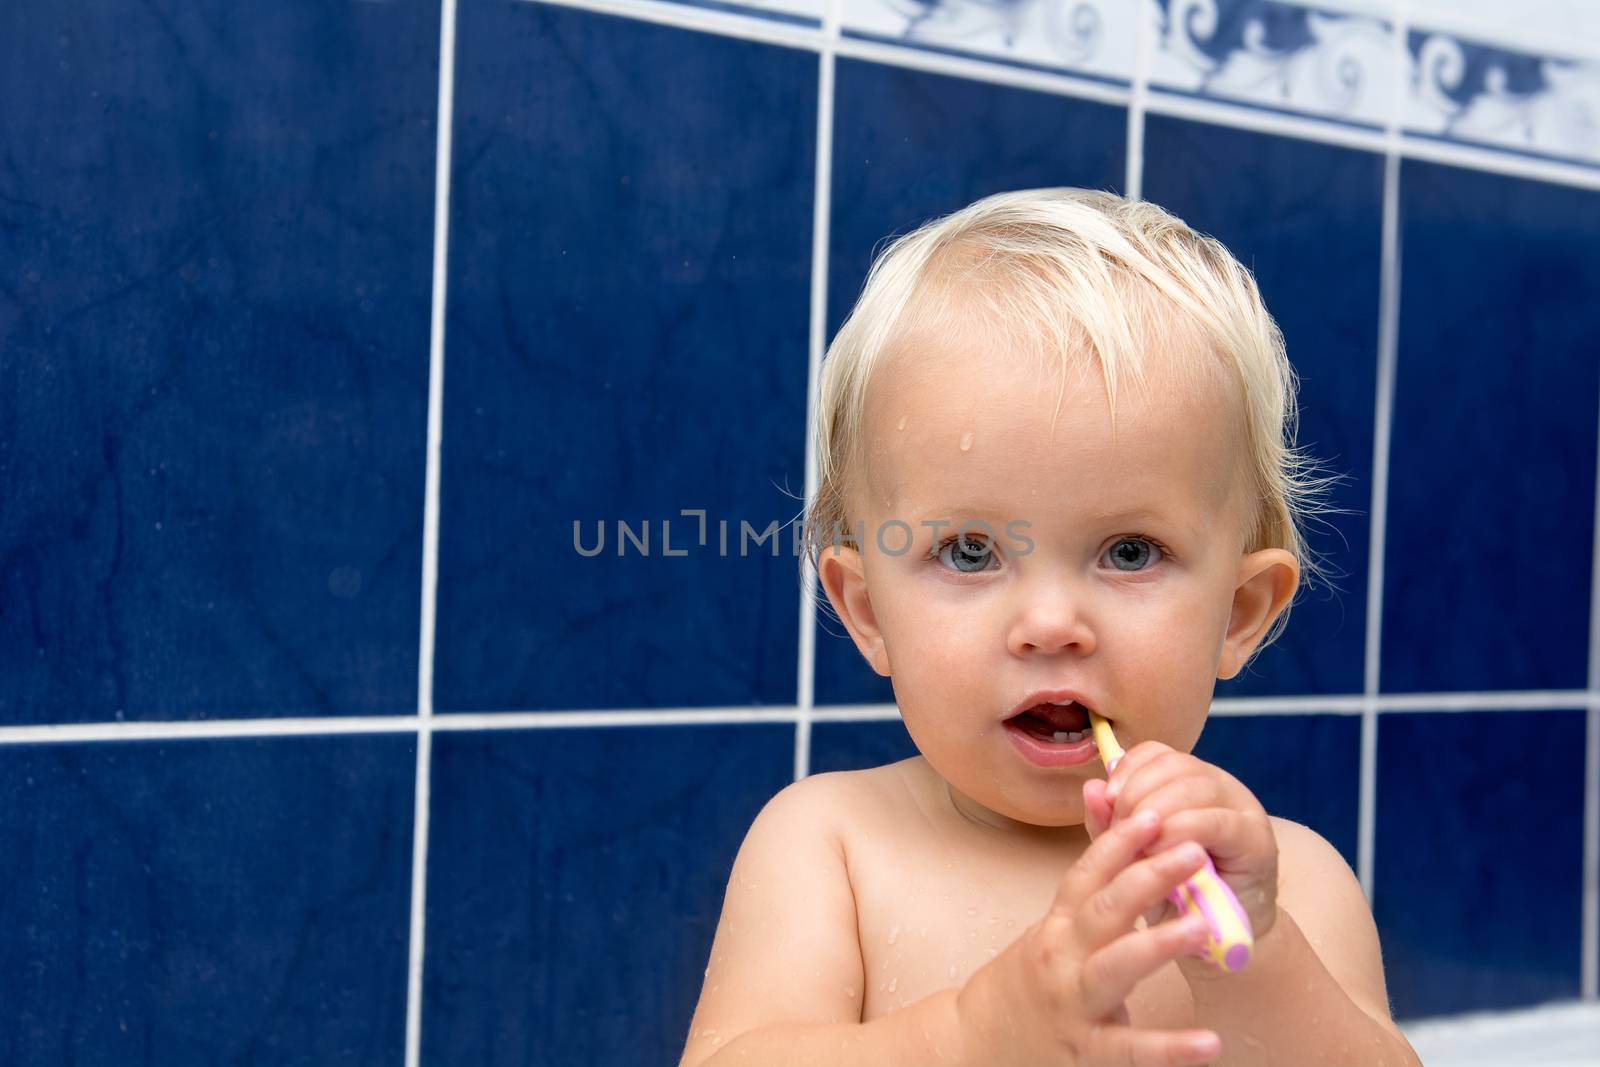 Little girl is brushing teeth in bathroom. Blue tiles behind. Looking at camera